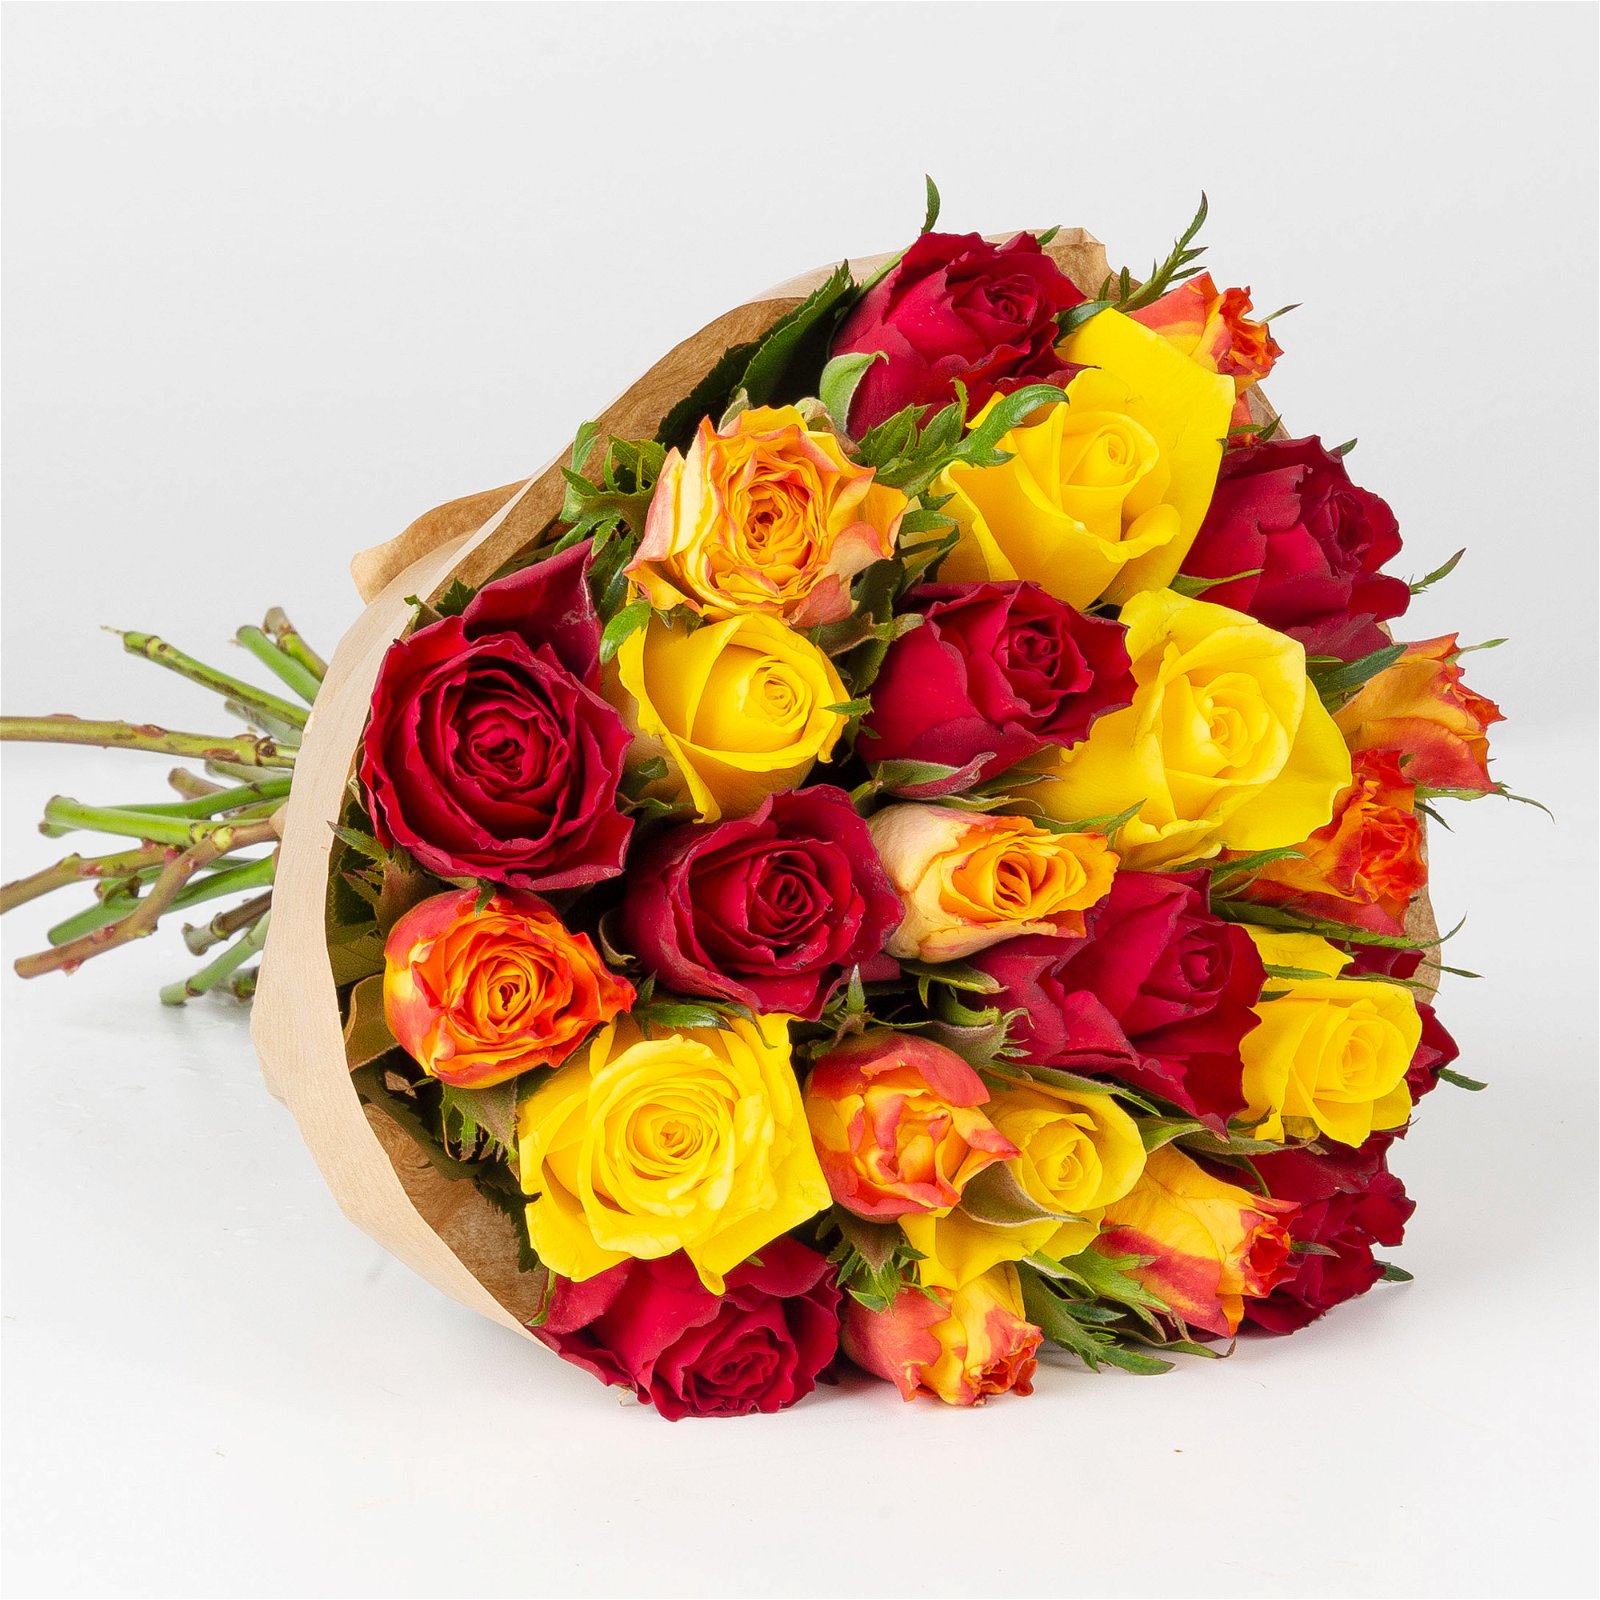 Blumenbund mit gemischten Rosen, rot/gelb, 25er-Bund, inkl. gratis Grußkarte